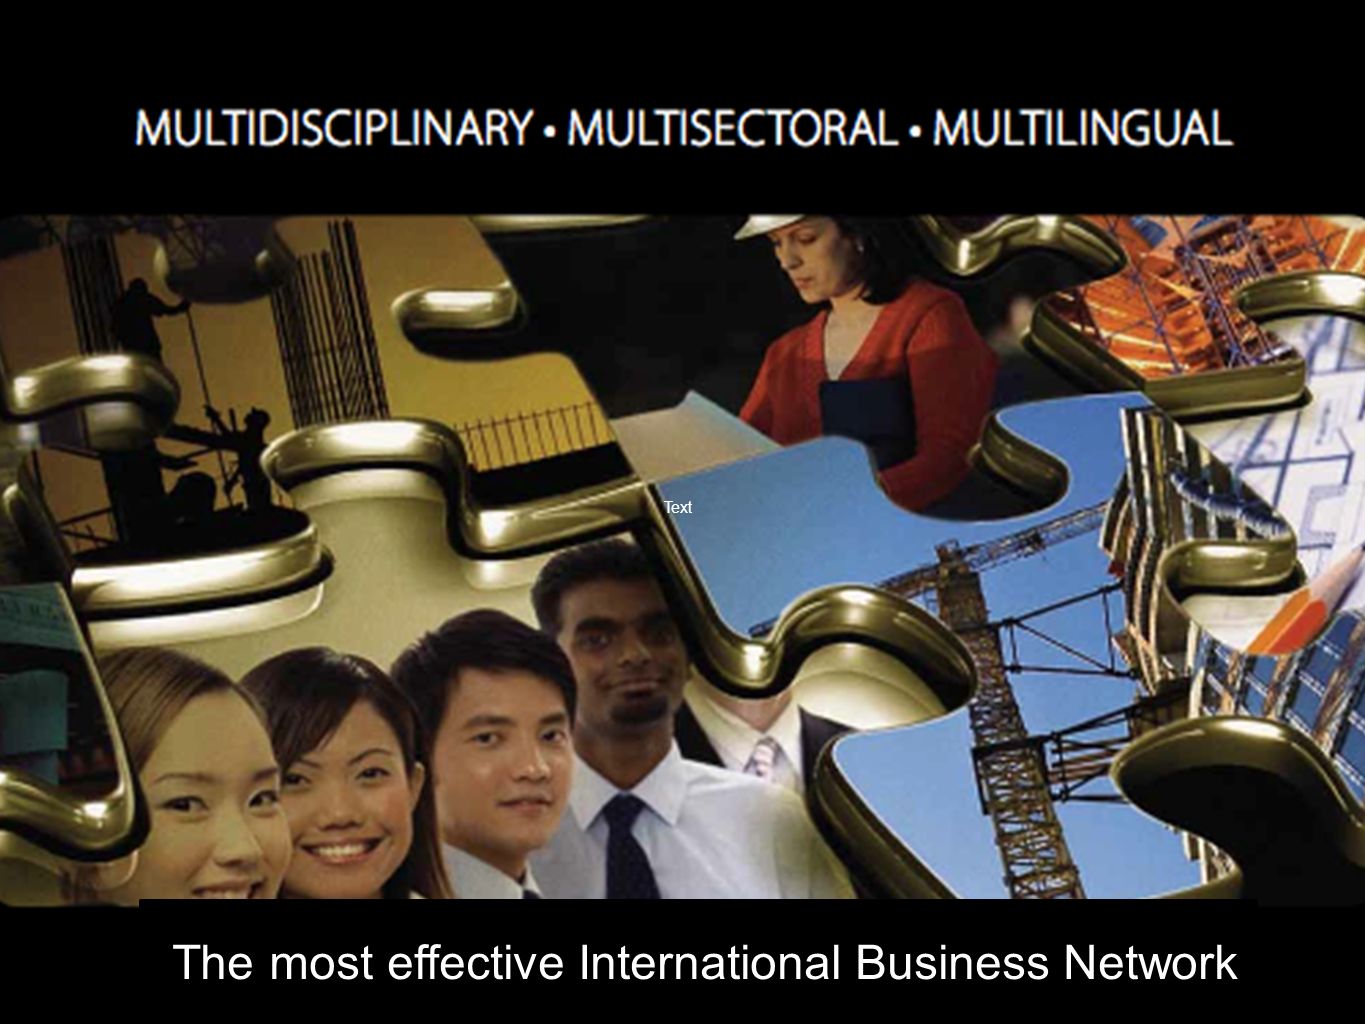 TThe most effective International Business Network Text